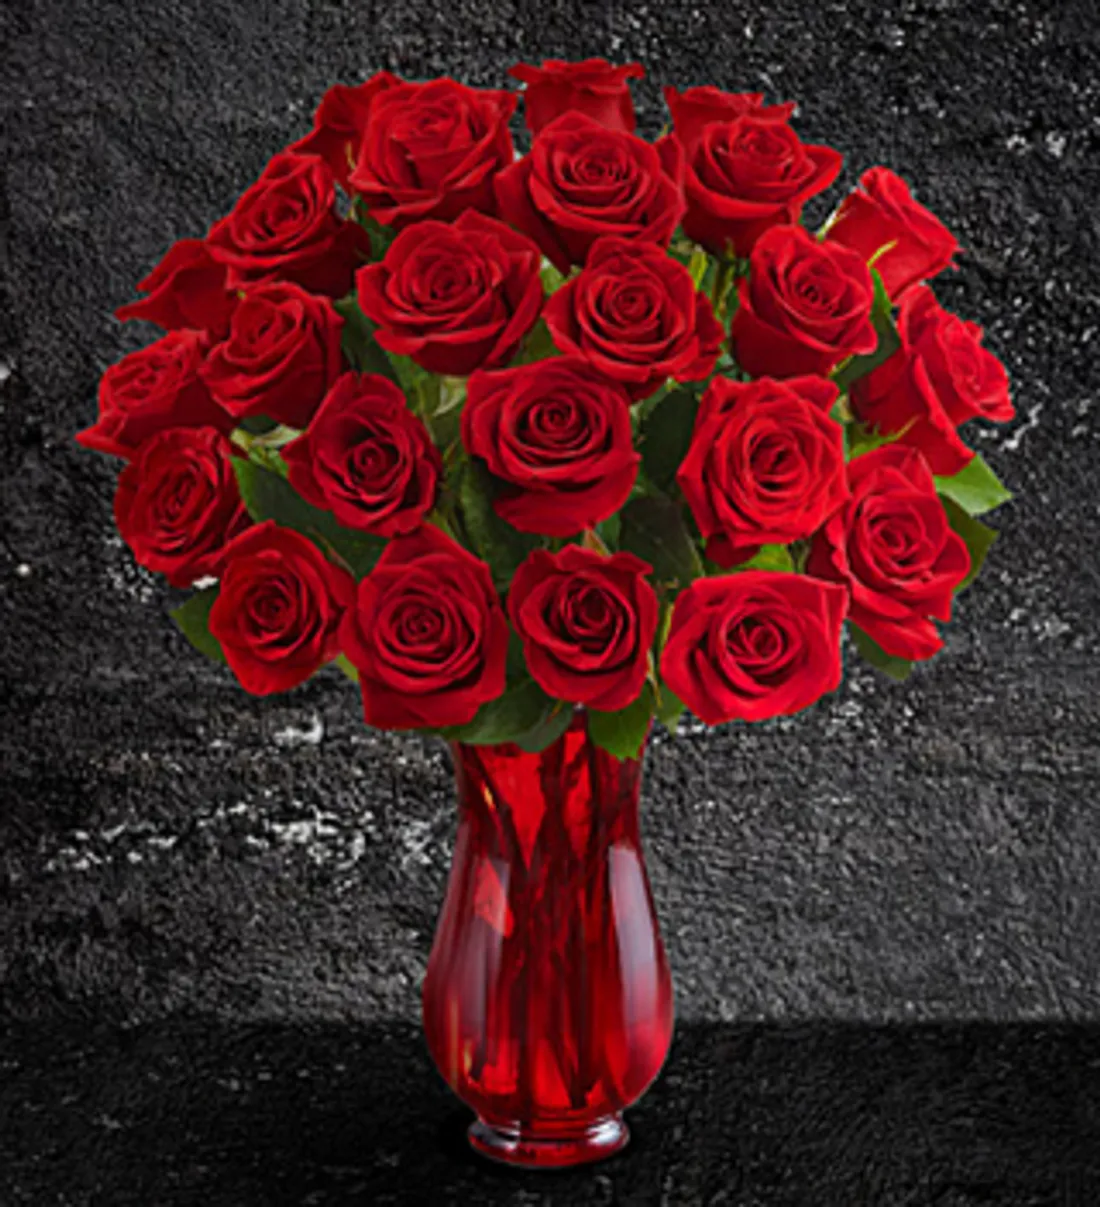 Roses rouges pour la Saint-Valentin